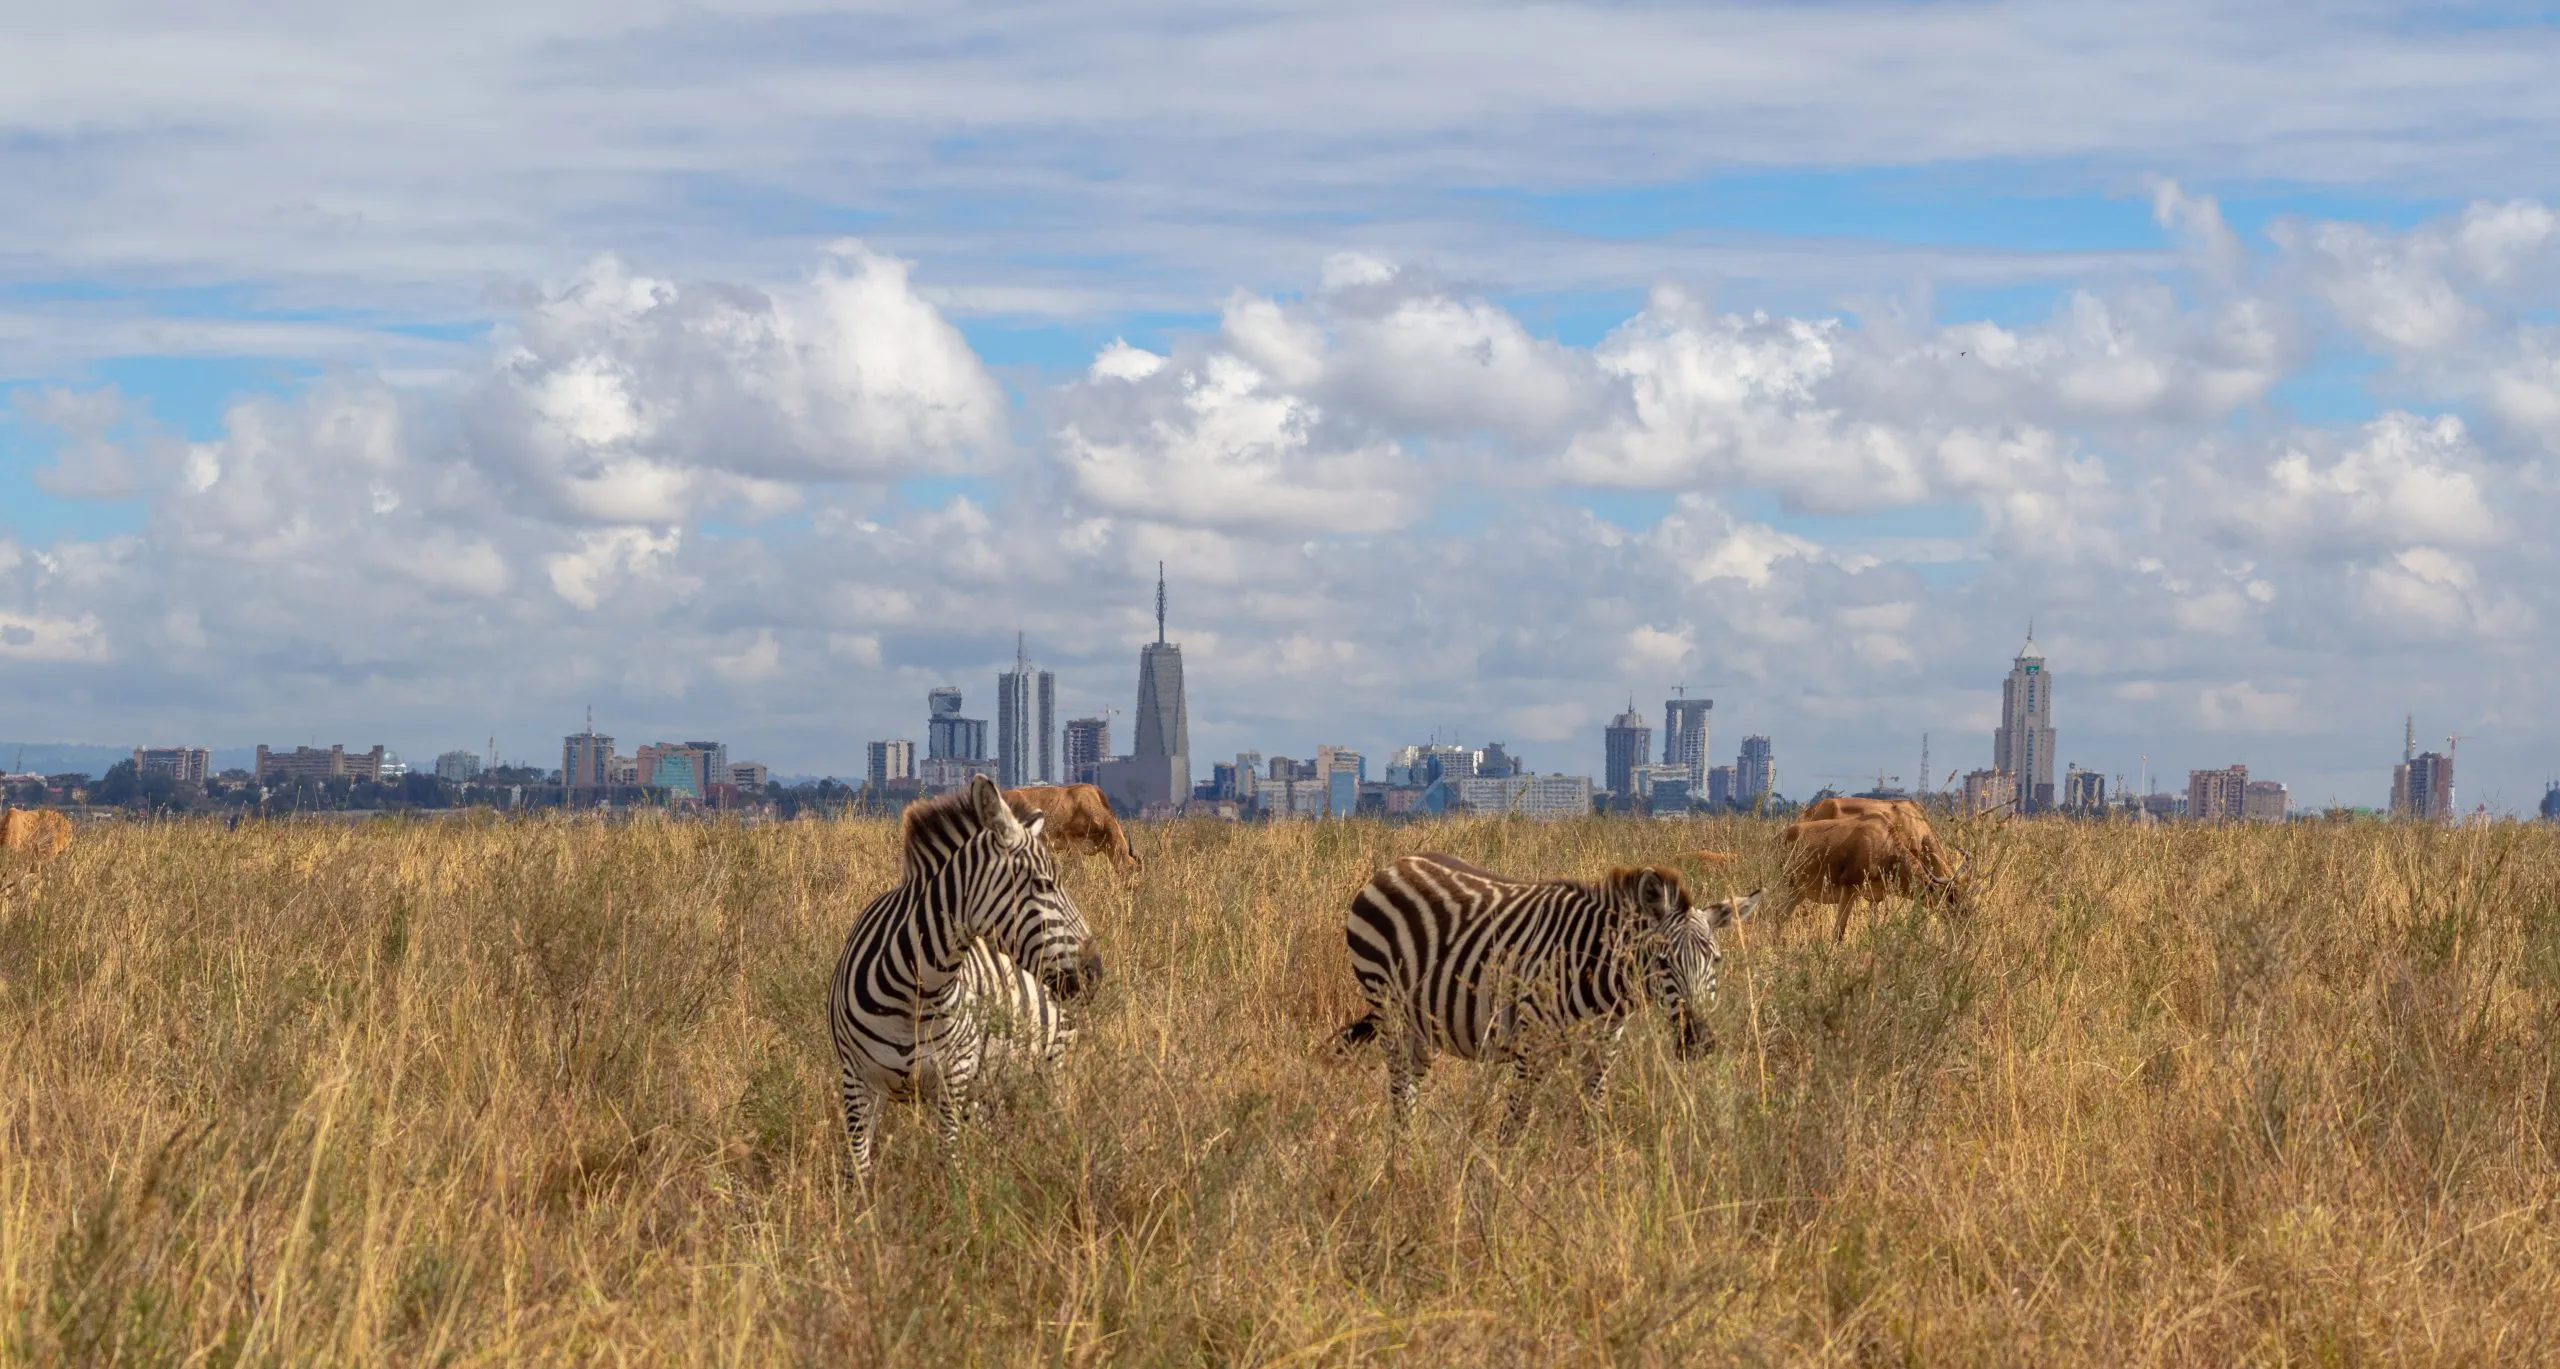 villieläimet ja kaupungin horisontti, savanni eläimet syövät ruohoa Nairobin kansallispuistossa, Afrikassa, taustalla Nairobin pilvenpiirtäjät horisontti panoraama näkymä